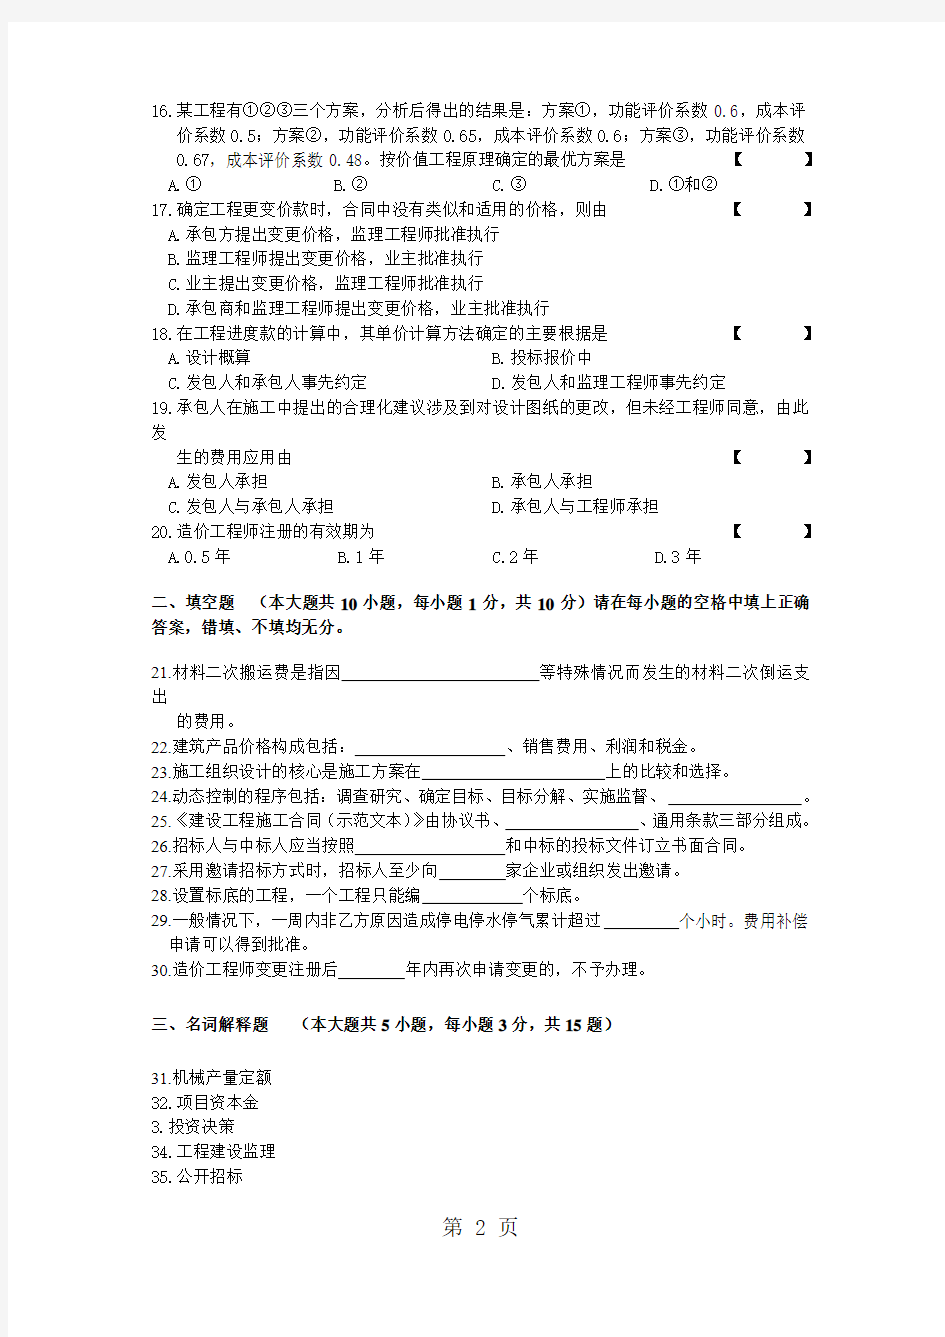 2019年10月湖北省高等教育自学考试精品文档14页